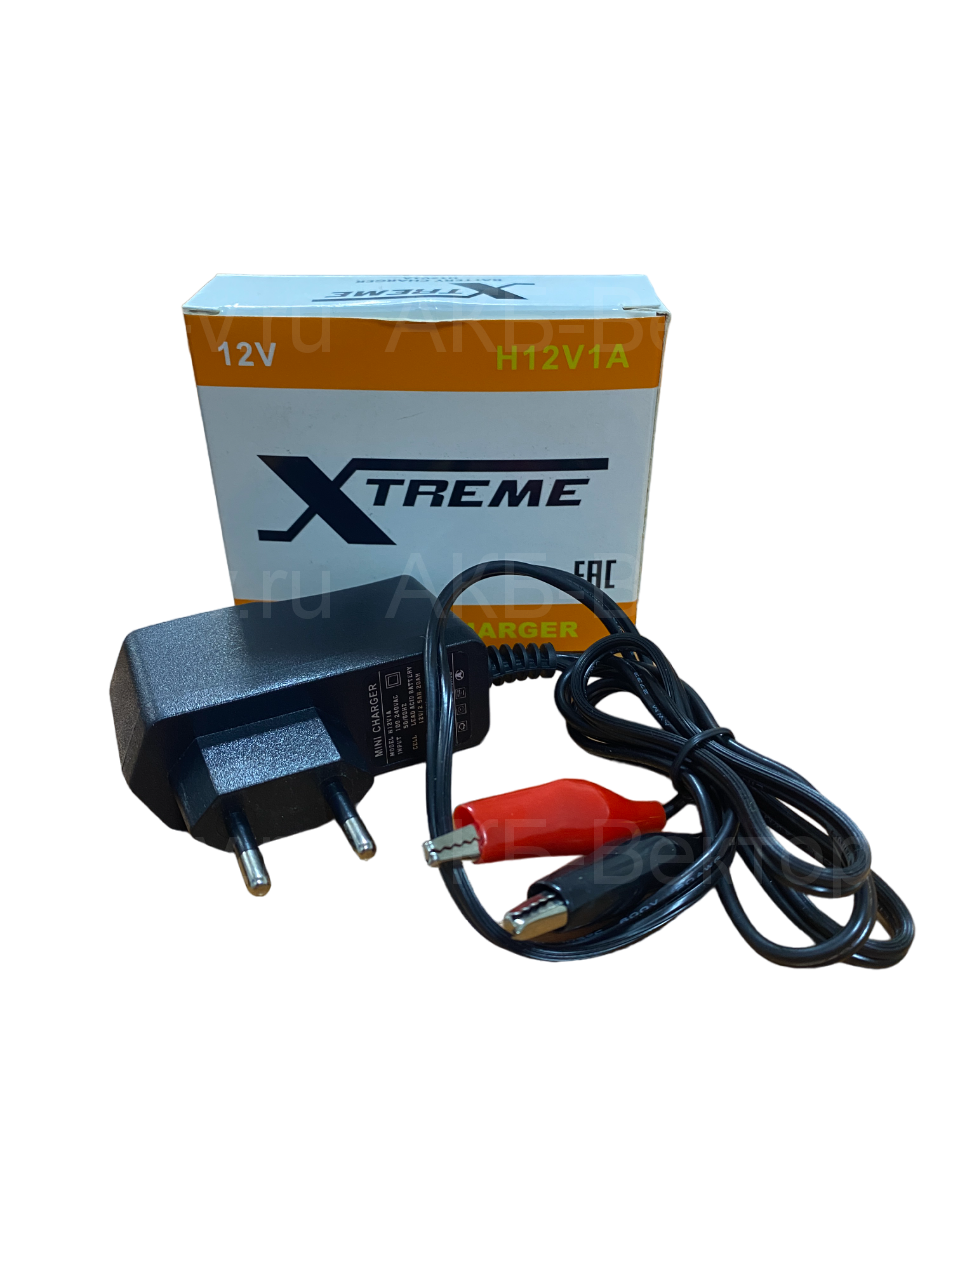 Зарядное устройство Xtreme Charger H12V1A  для AGM, GEL.